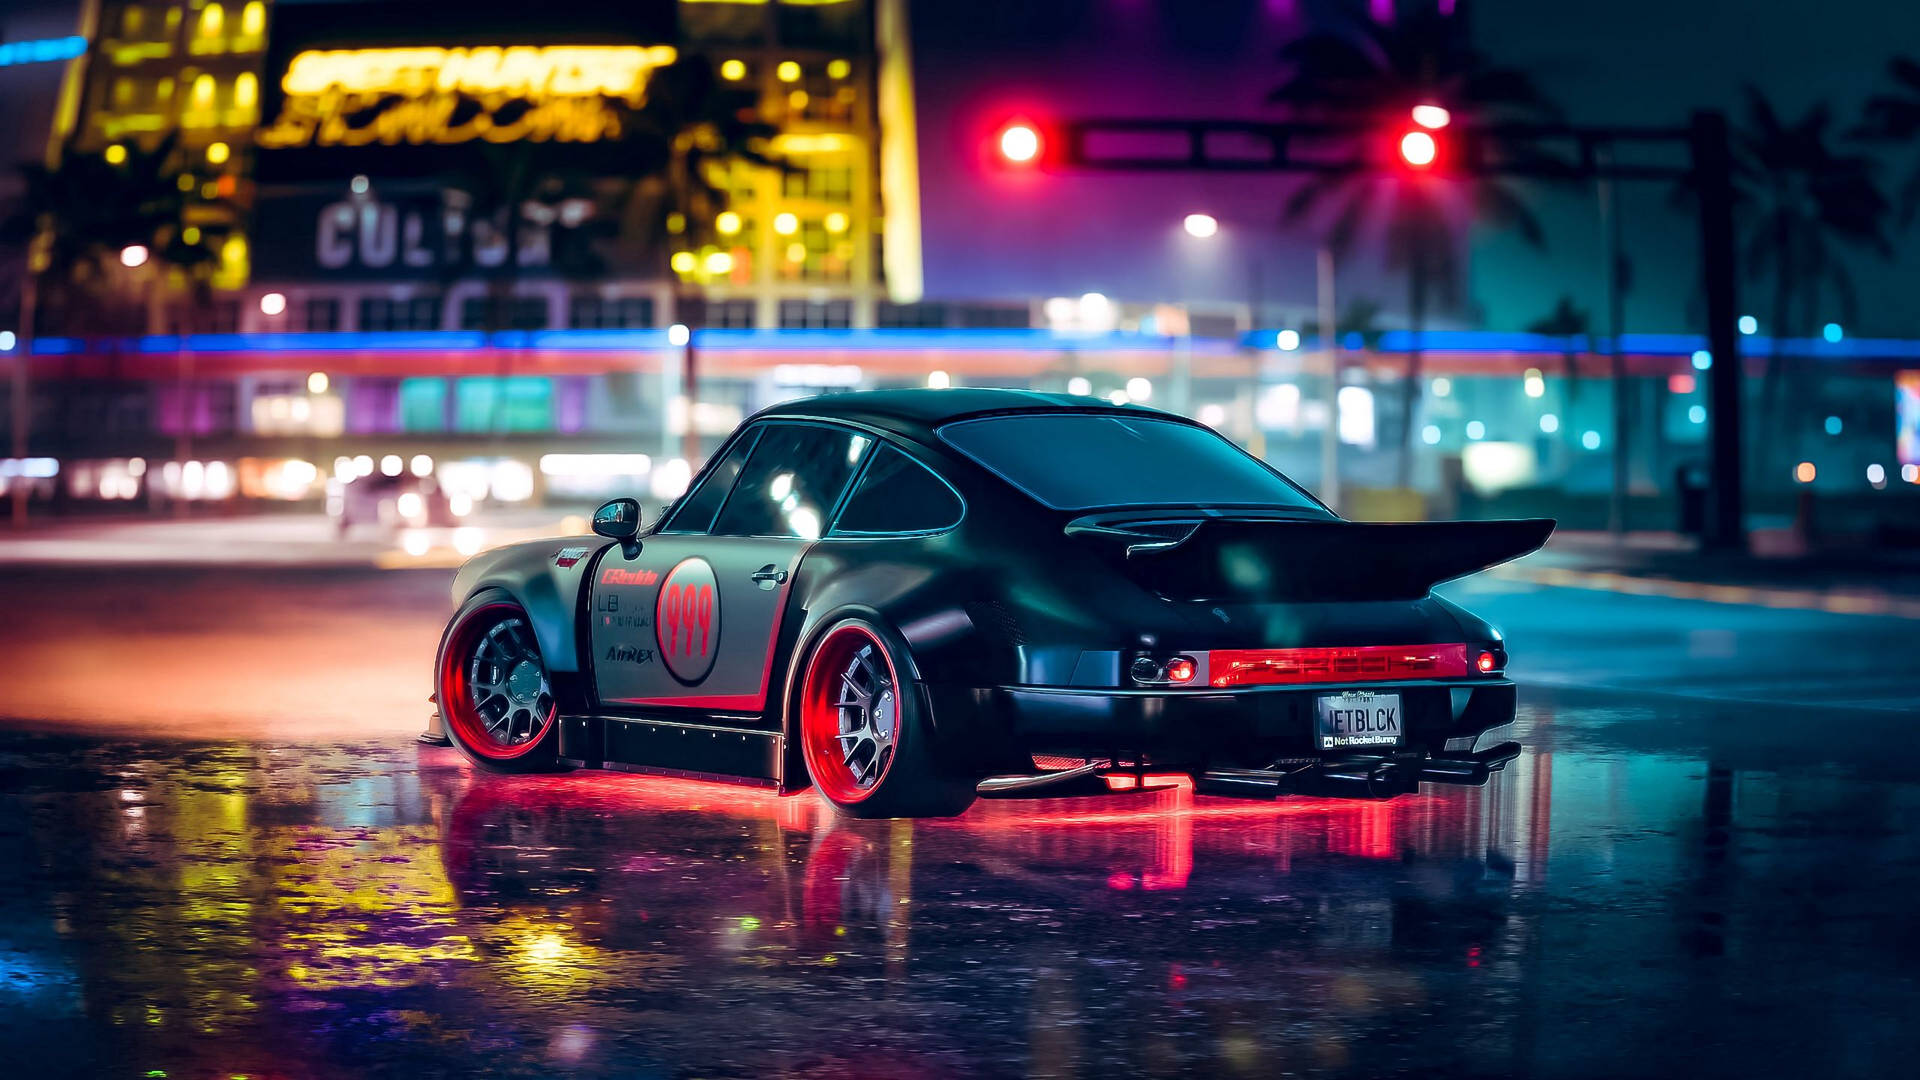 2560 X 1440 Car Porsche In Neon Aesthetic Wallpaper